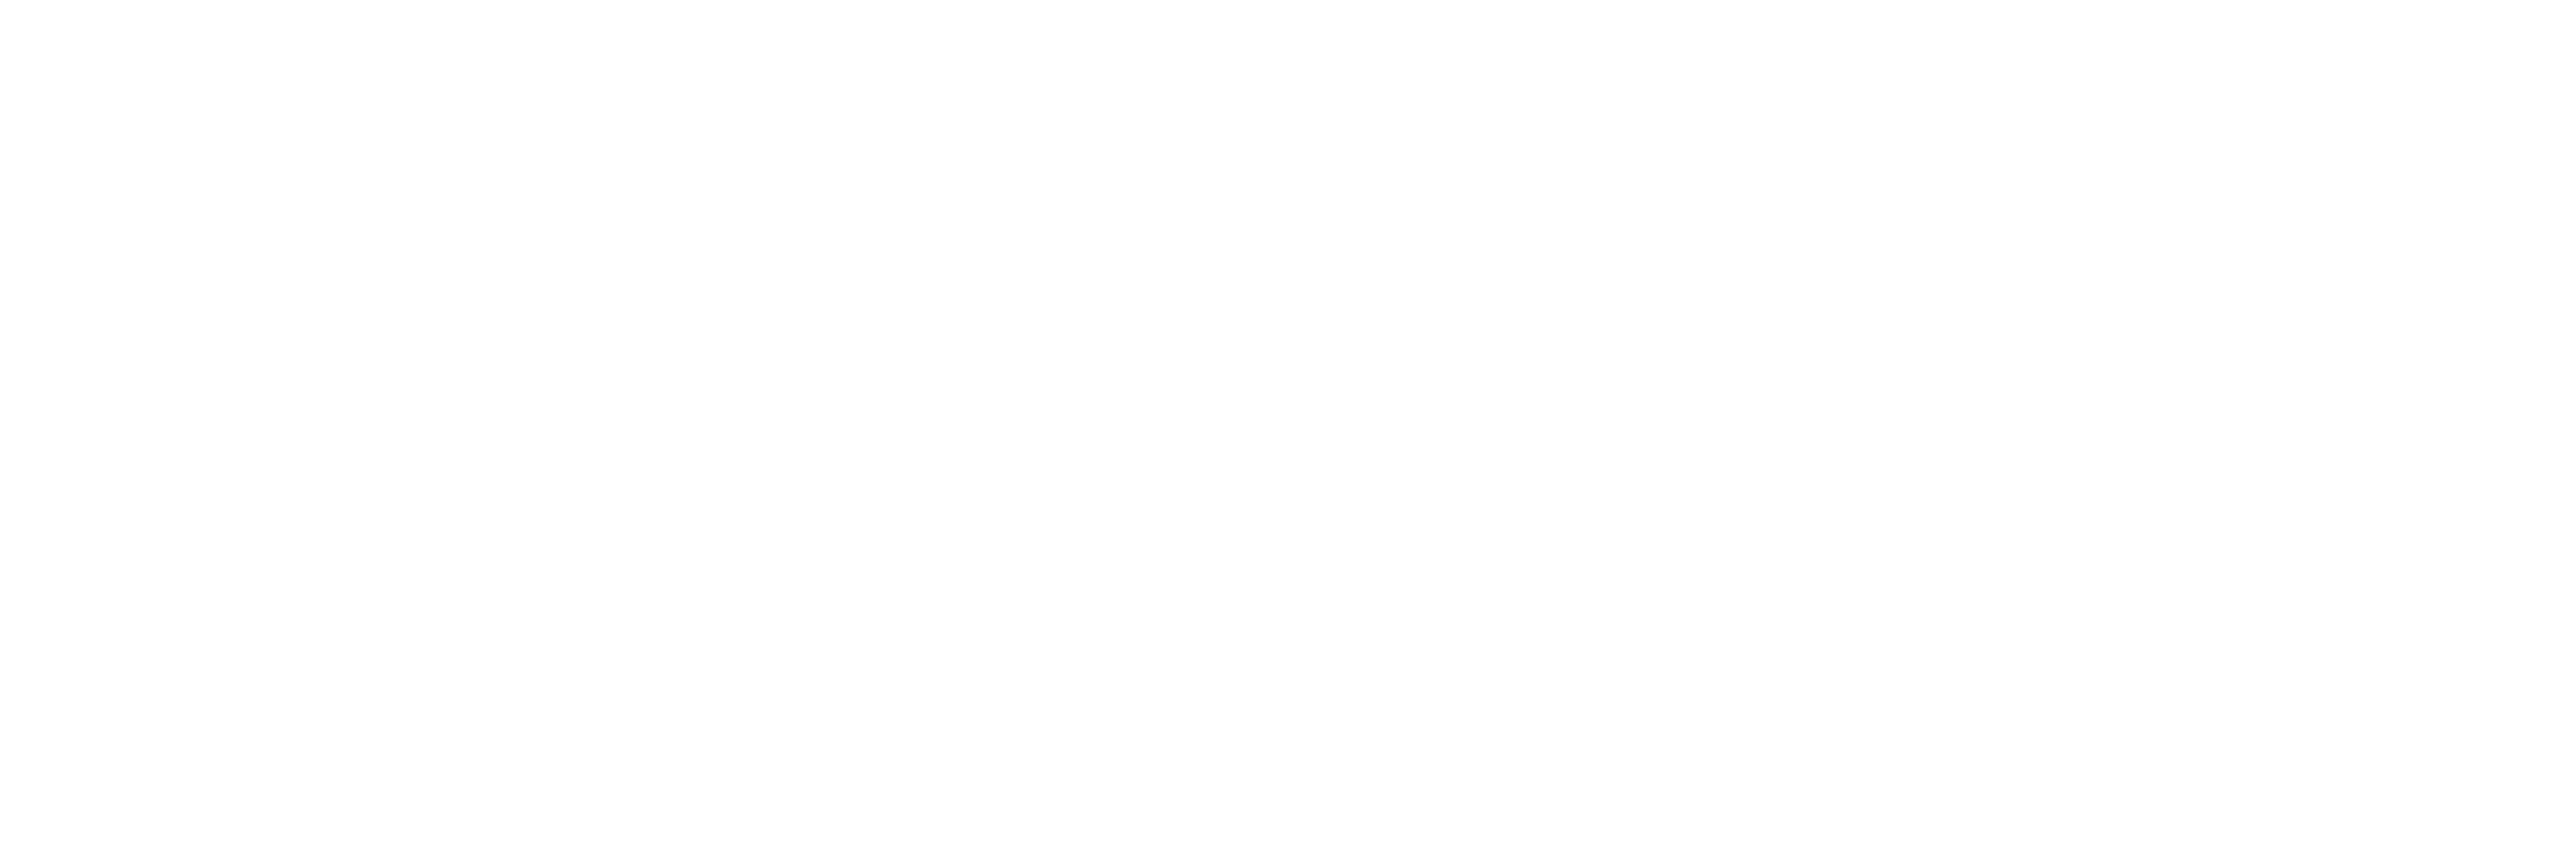 Kershaw Home Buyers logo